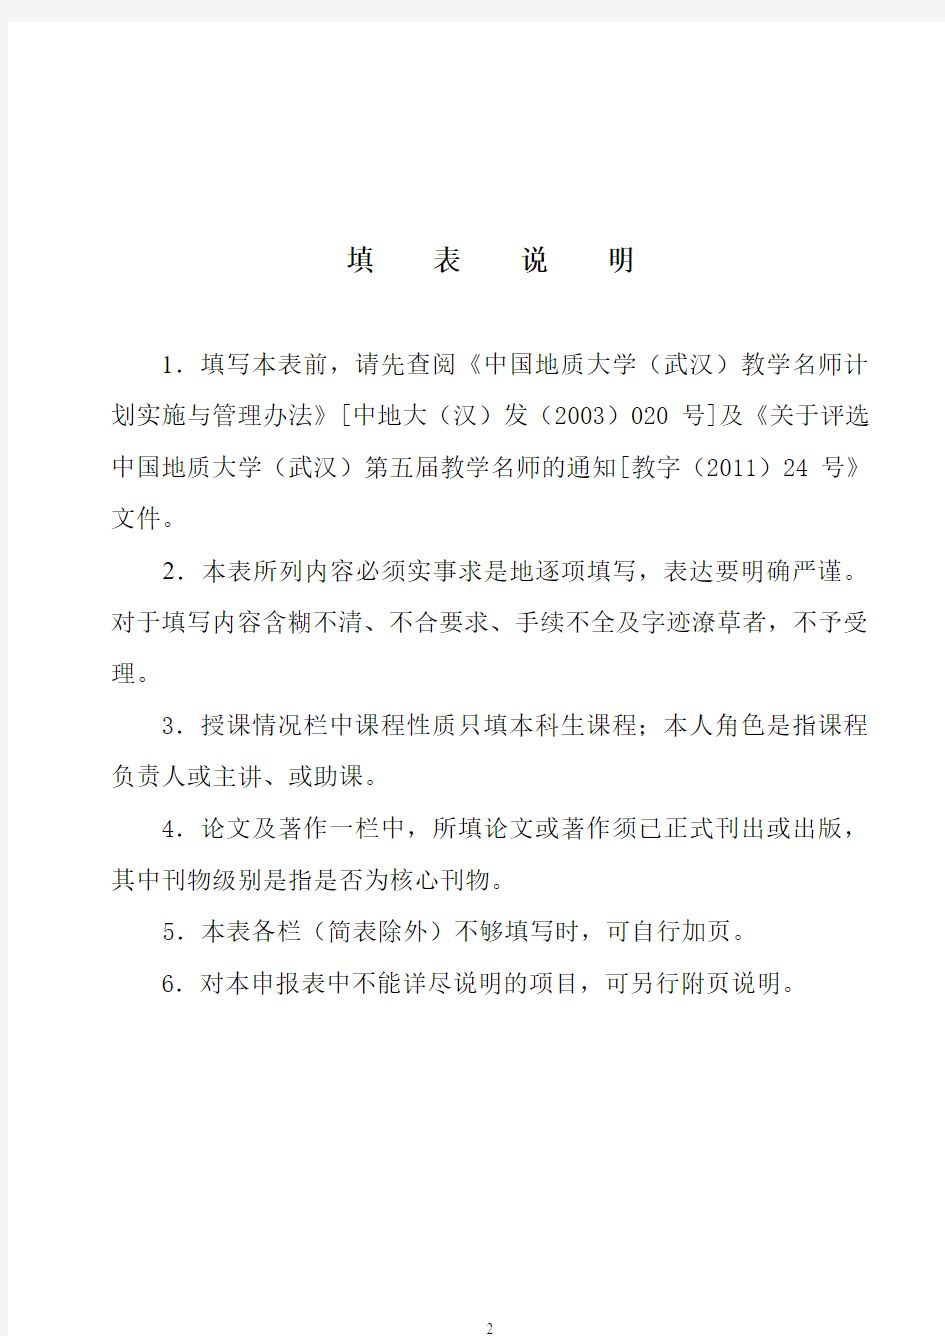 中国地质大学 武汉教学名师申报表